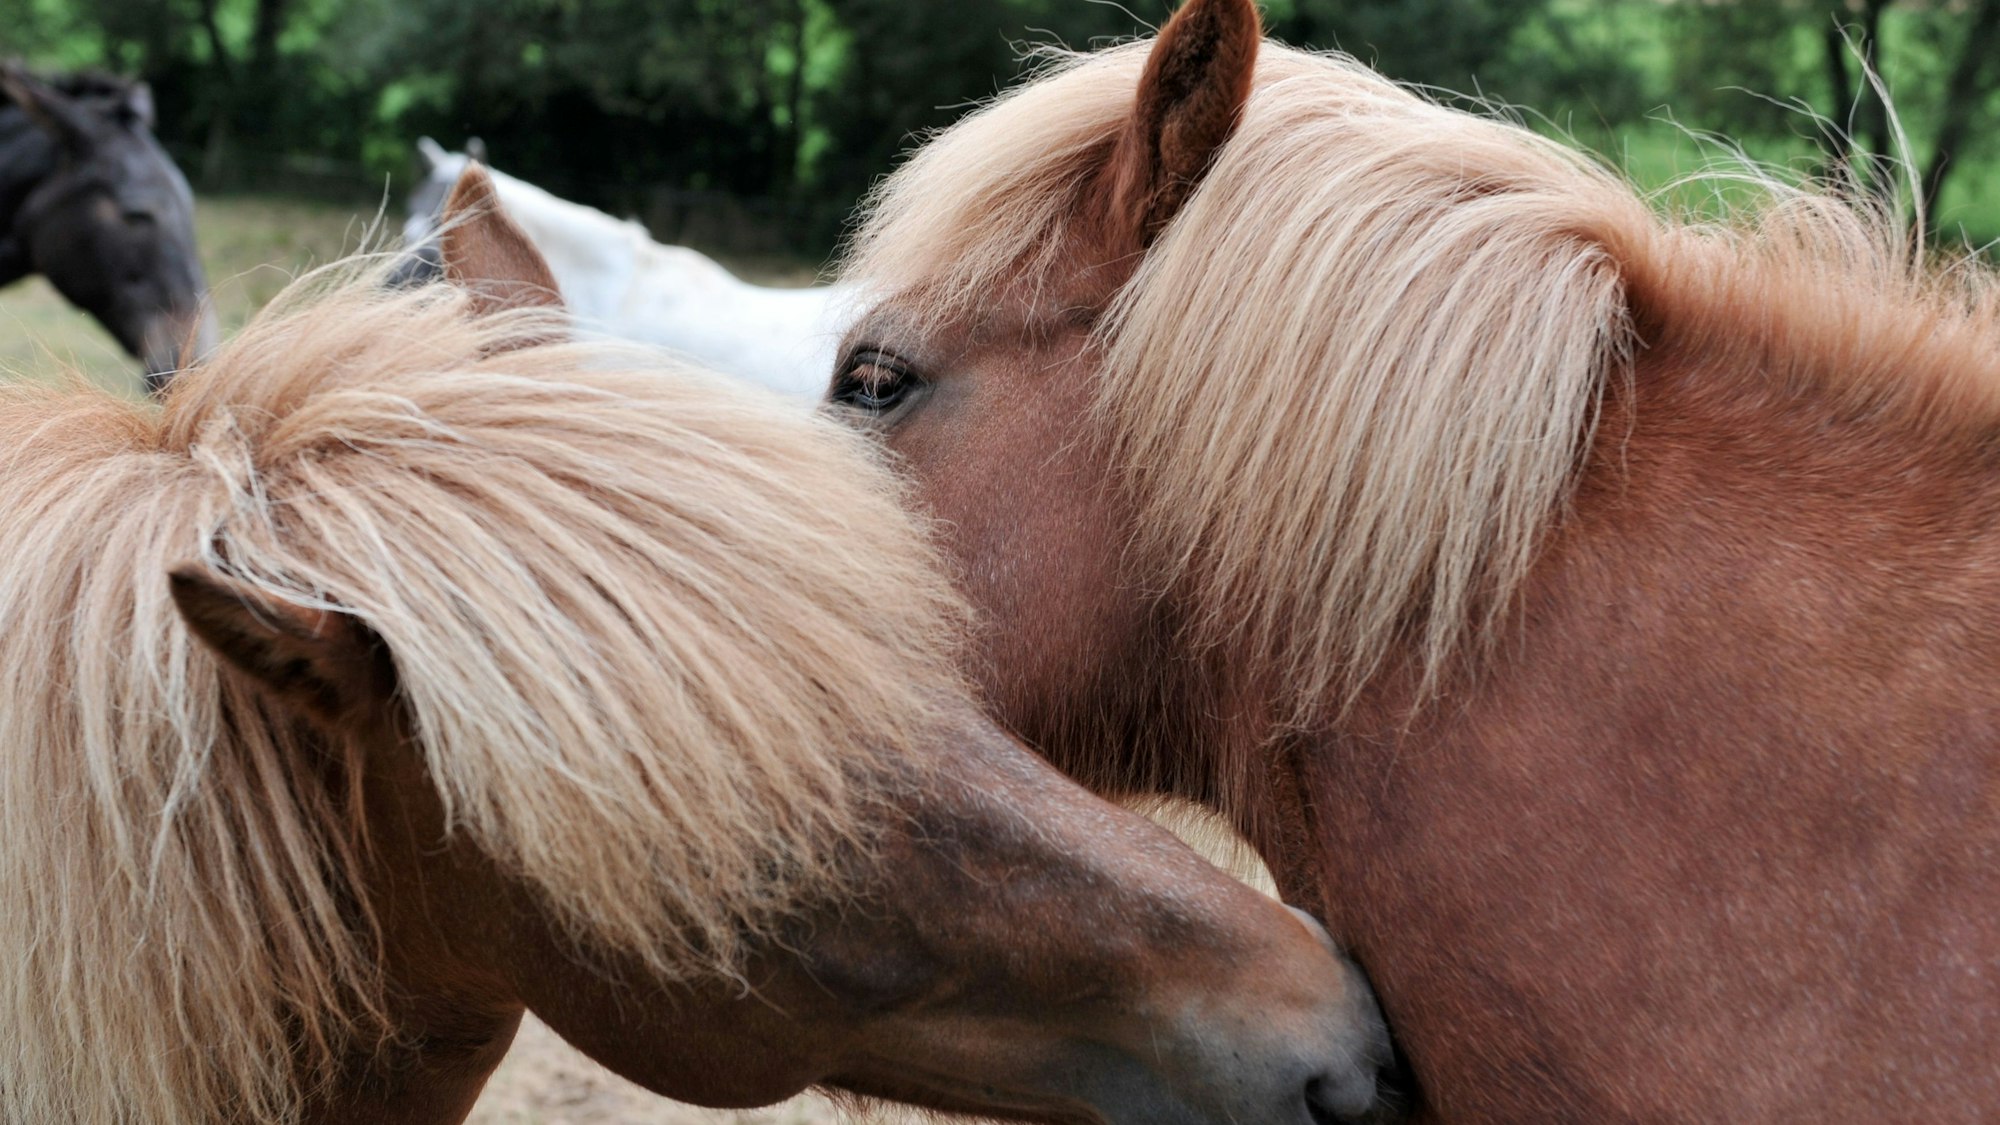 Zwei Island-Stuten beschnuppern sich am 24.08.2012 auf einer Pferdekoppel in der Nähe von Bad Homburg.